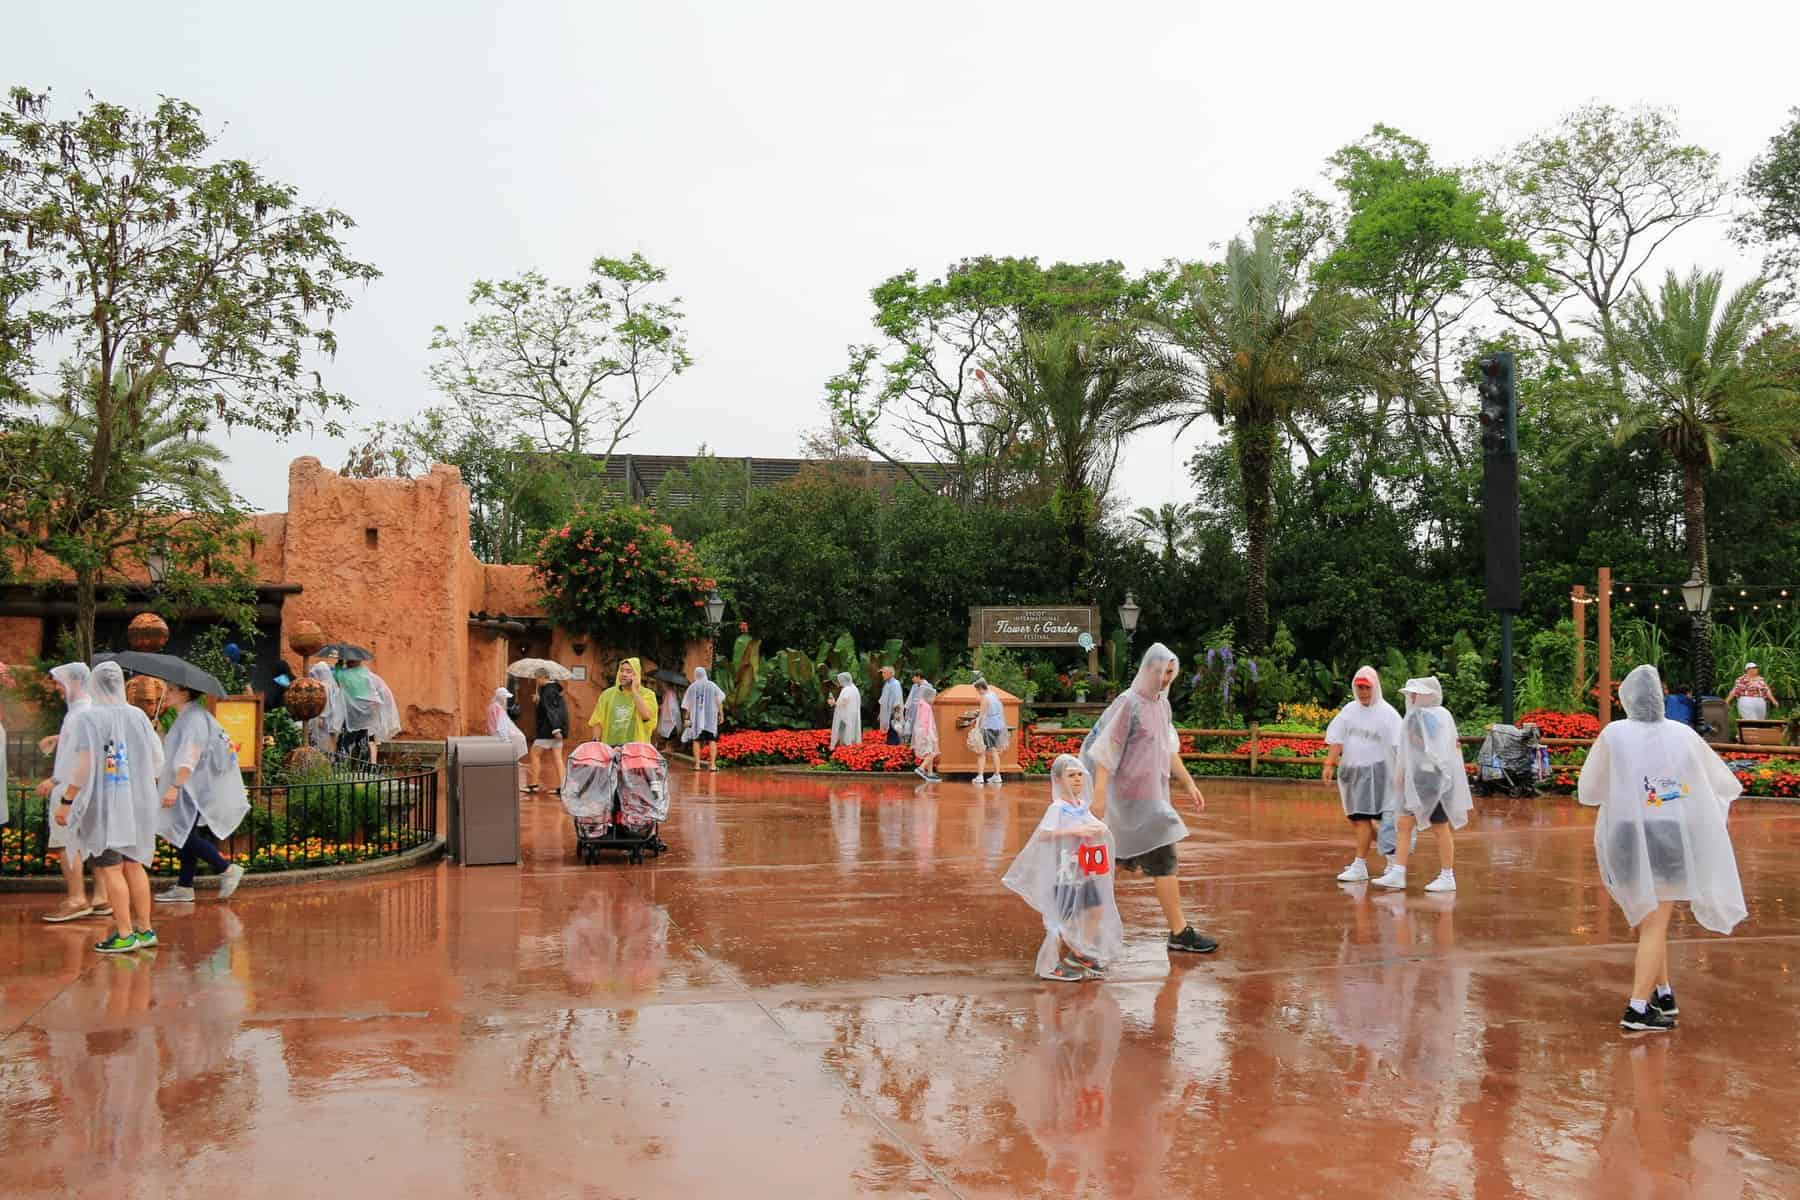 Disney com muita chuva - Melhor época para ir a Disney